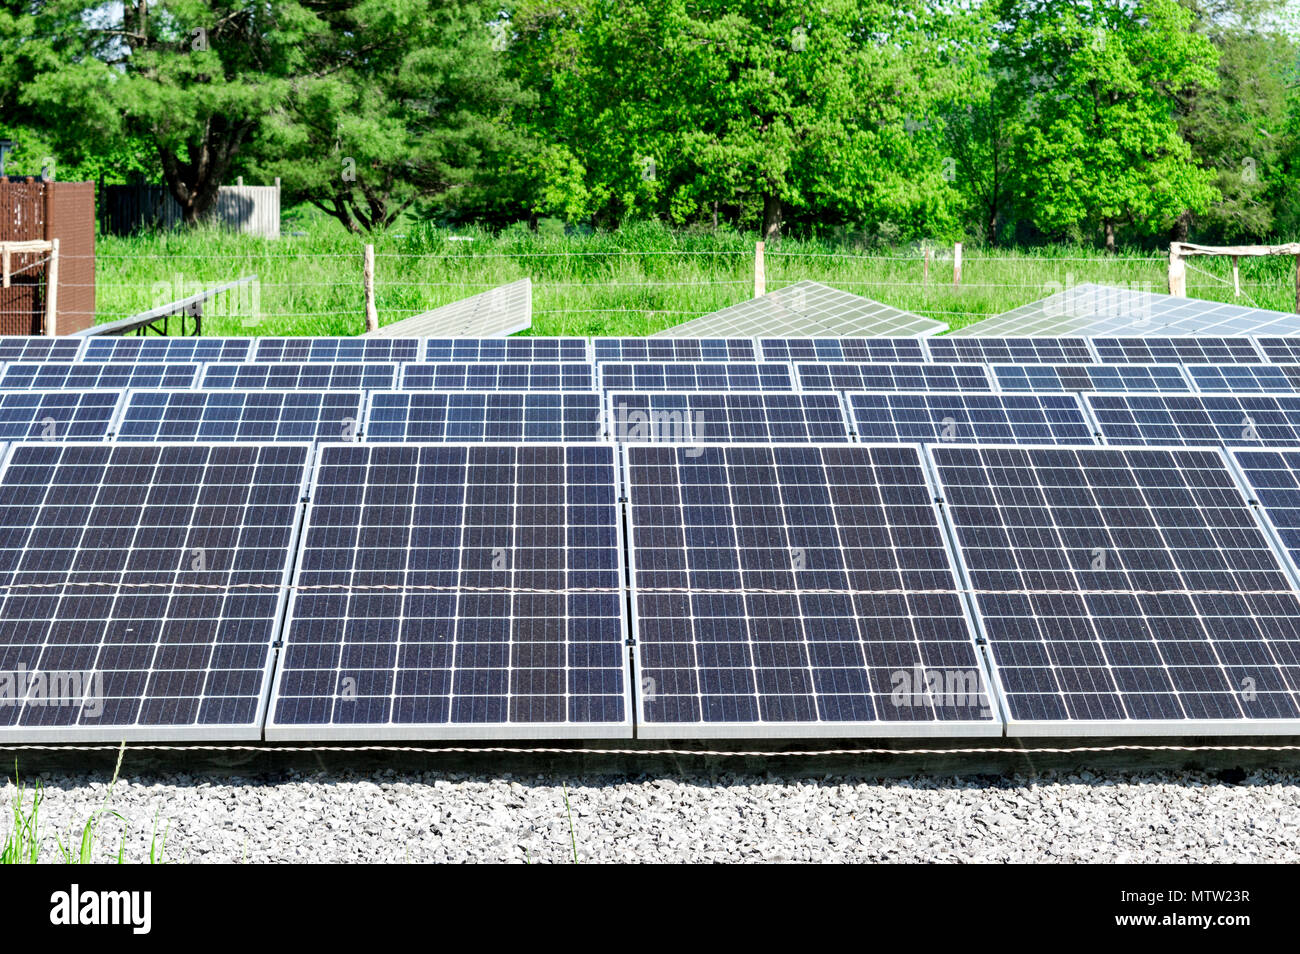 Un grand groupe de panneaux solaires dans la région de Tennessee Cades Cove. Banque D'Images